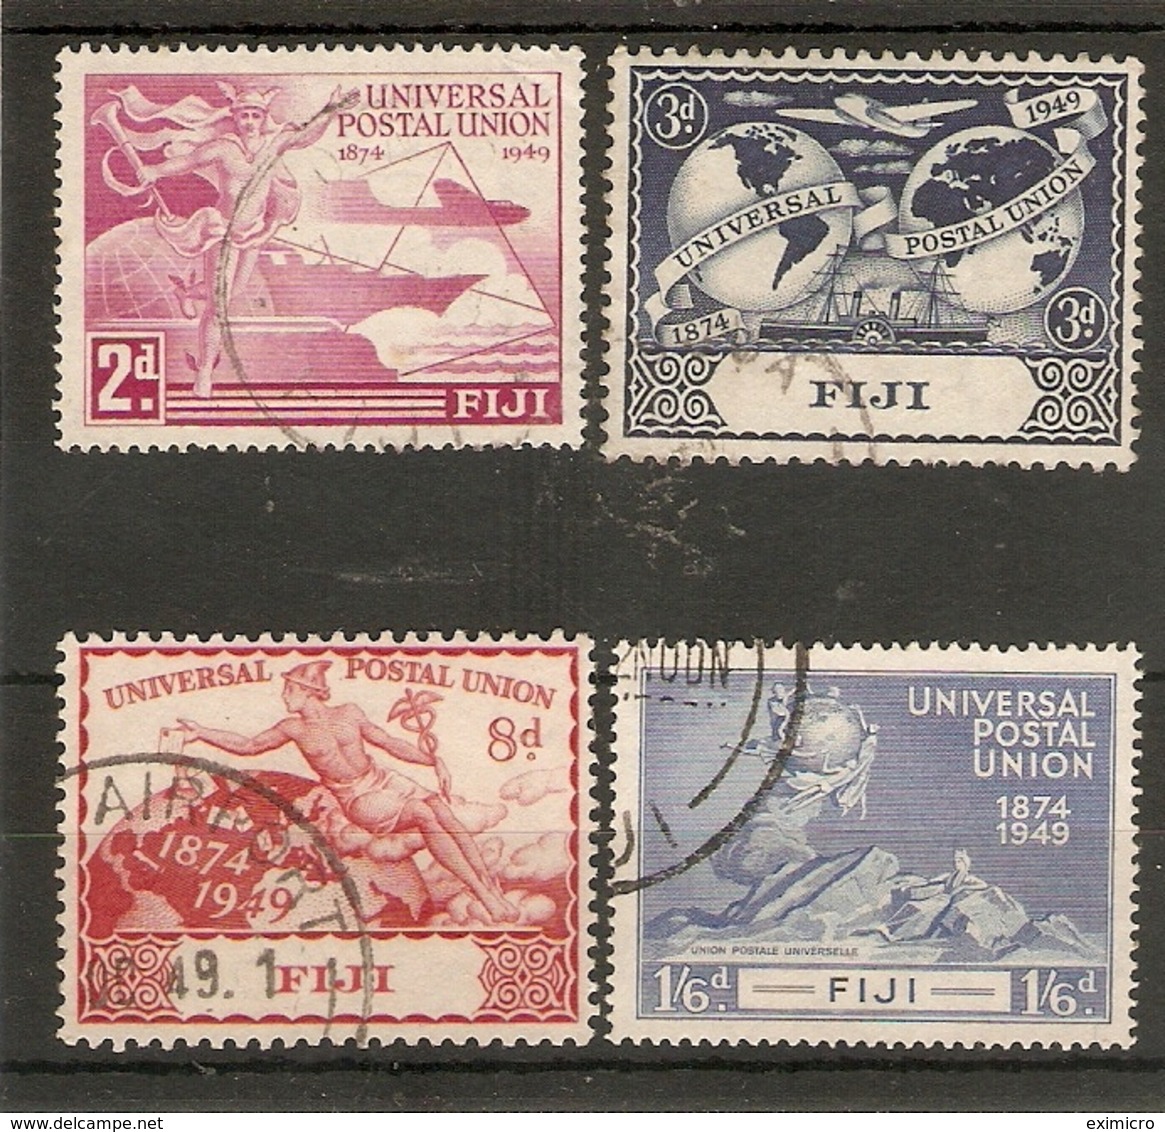 FIJI 1949 UPU SET FINE USED Cat £16 - Fiji (...-1970)